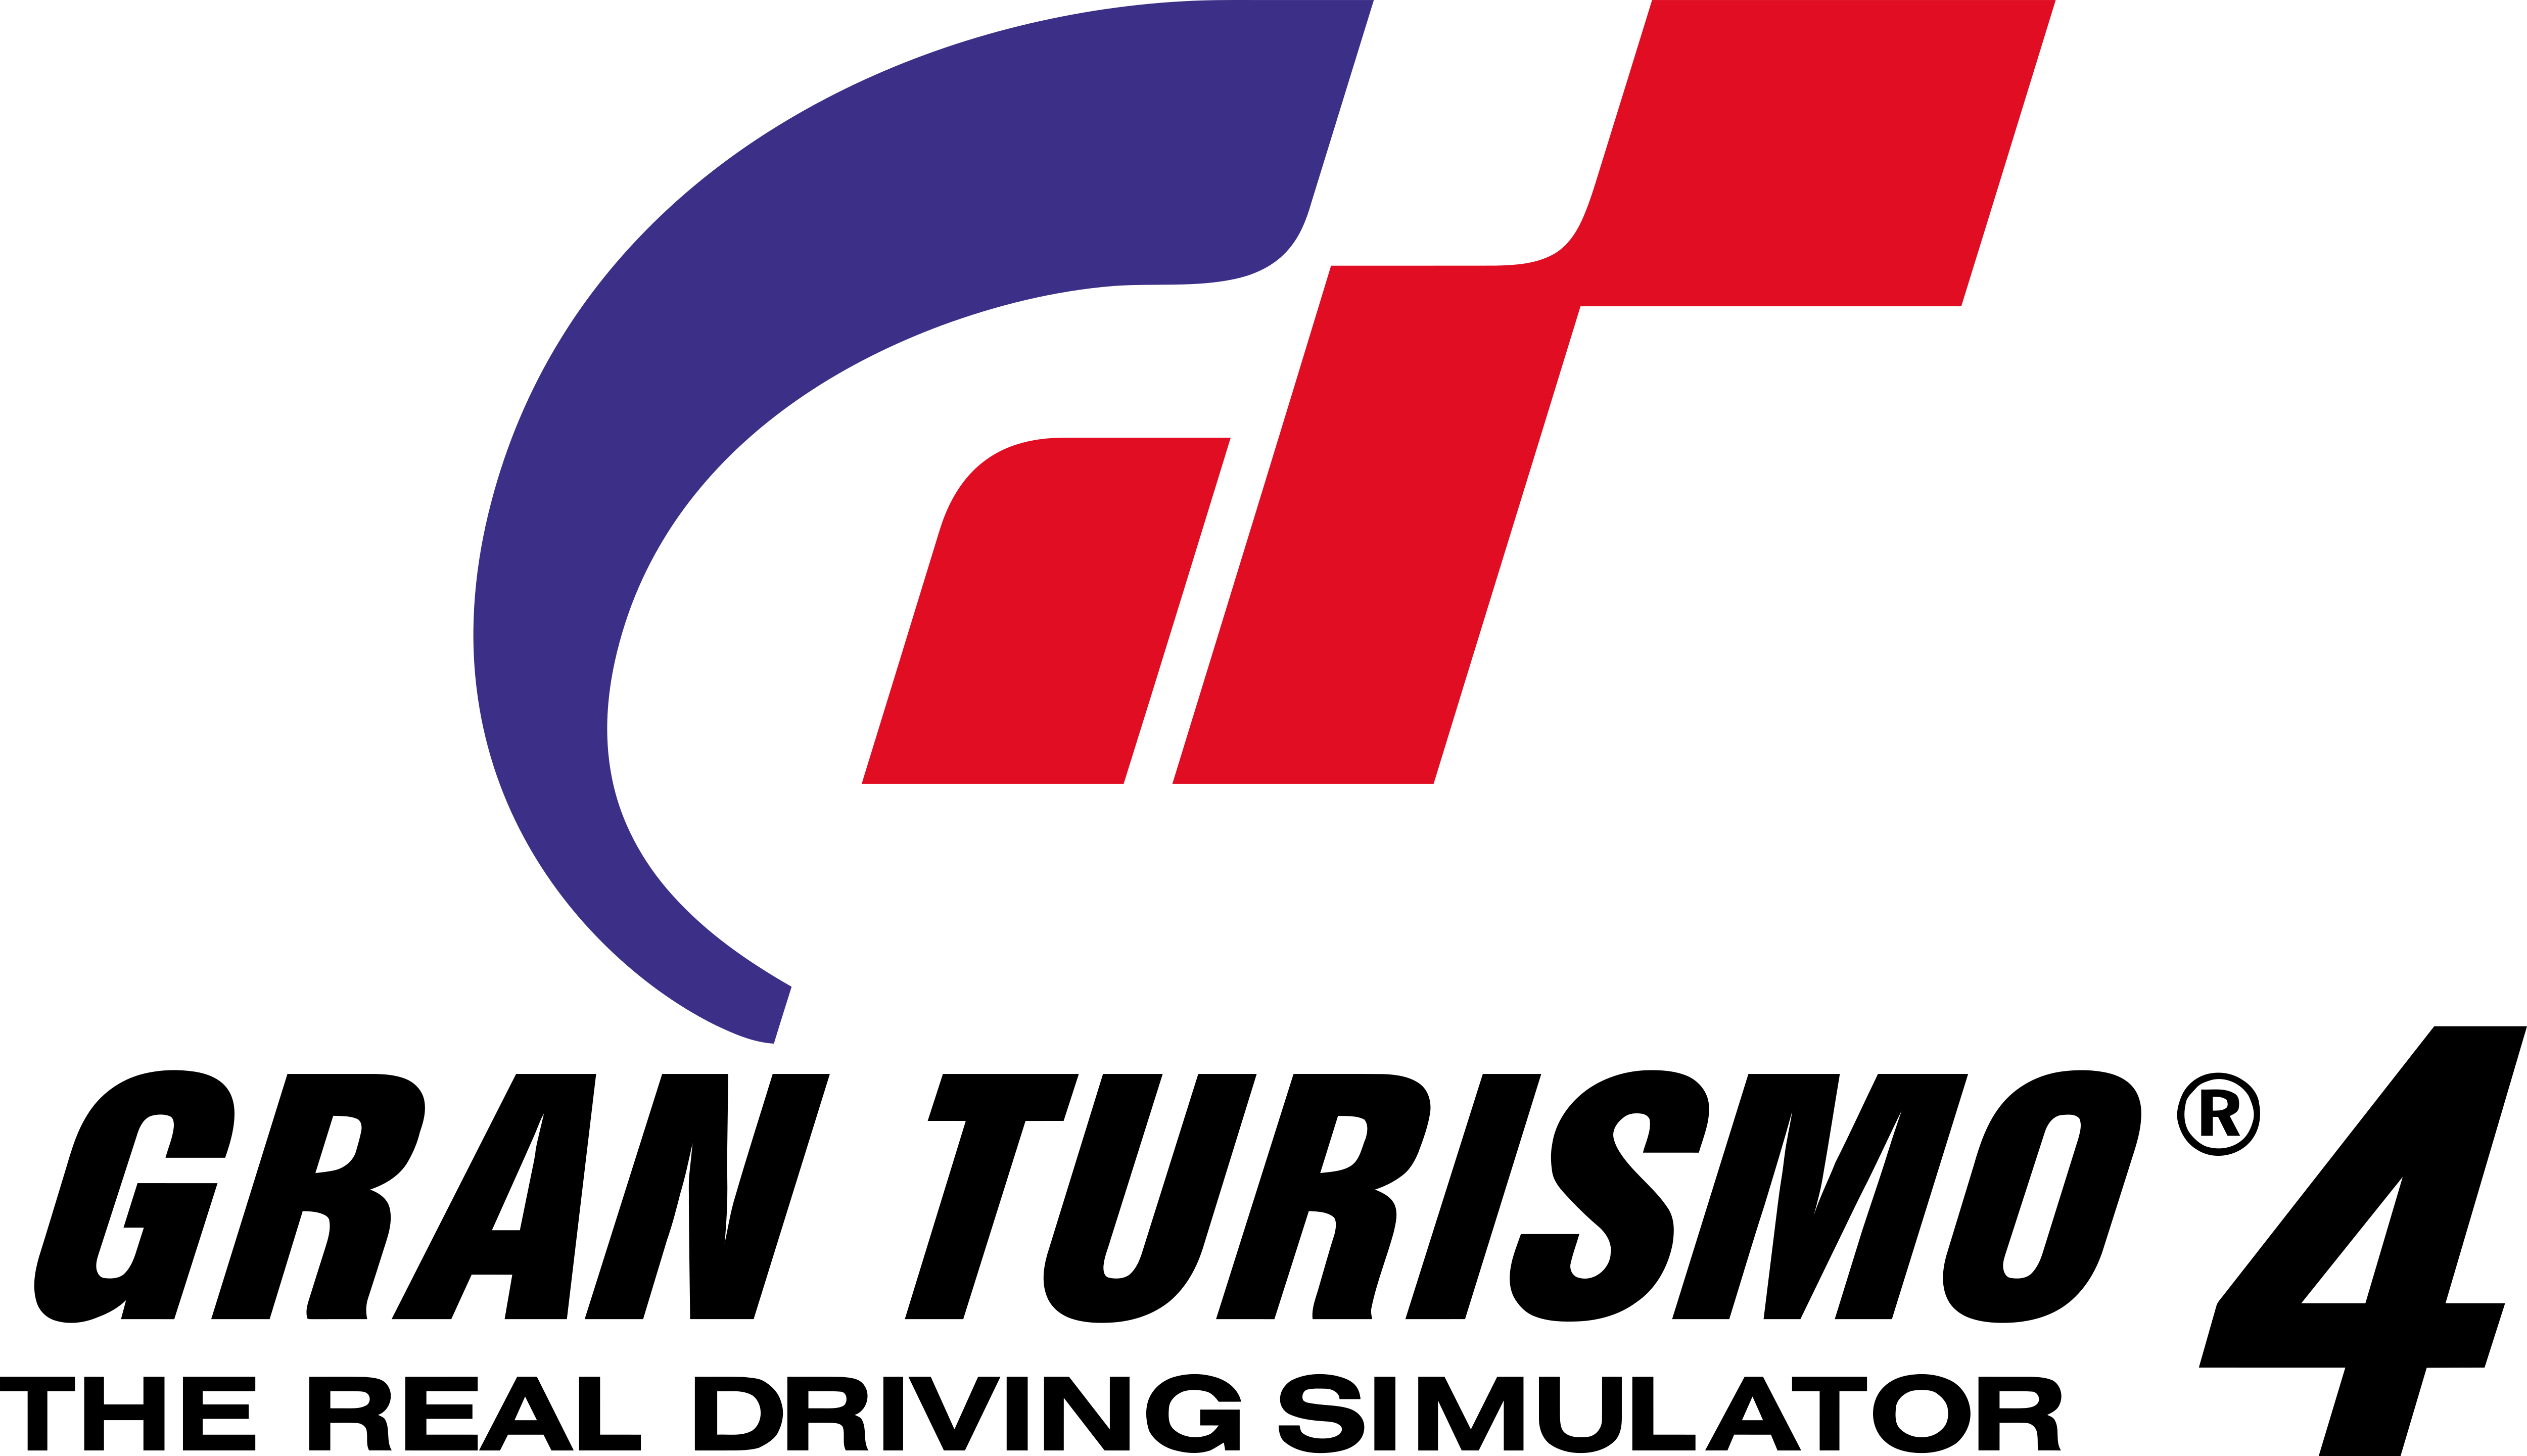 Gran Turismo Logos Download